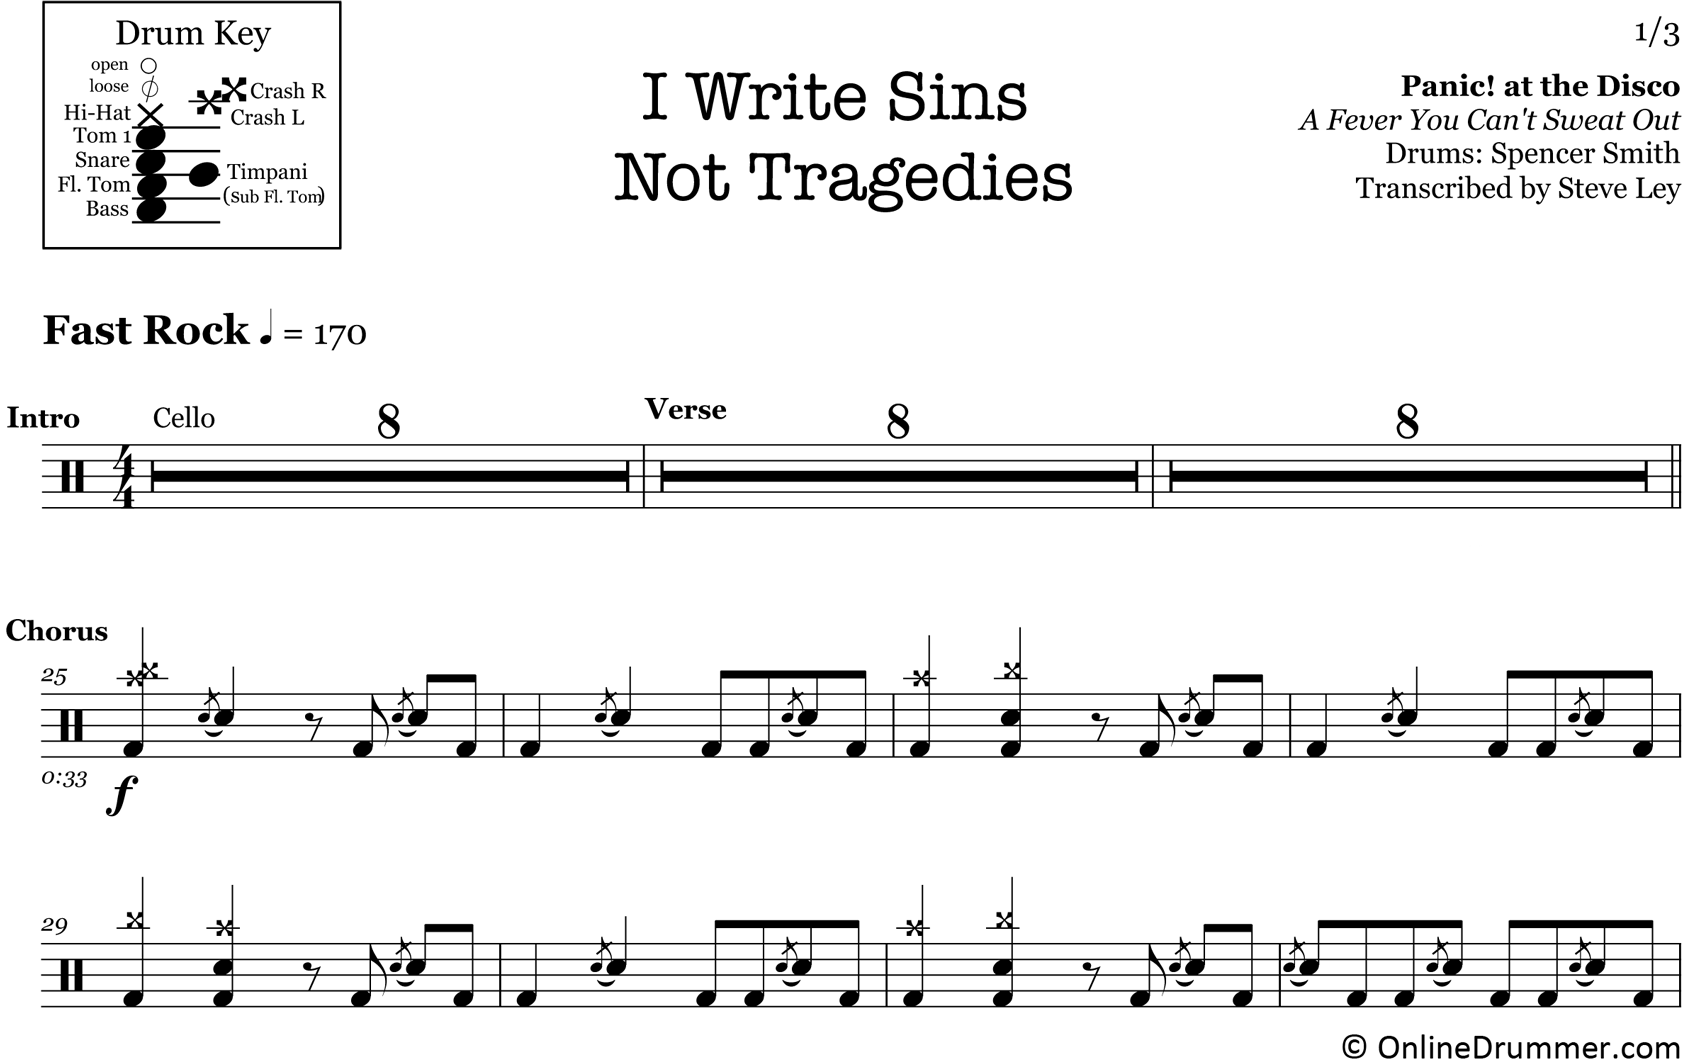 I Write Sins Not Tragedies - Panic! At The Disco - Drum Sheet Music